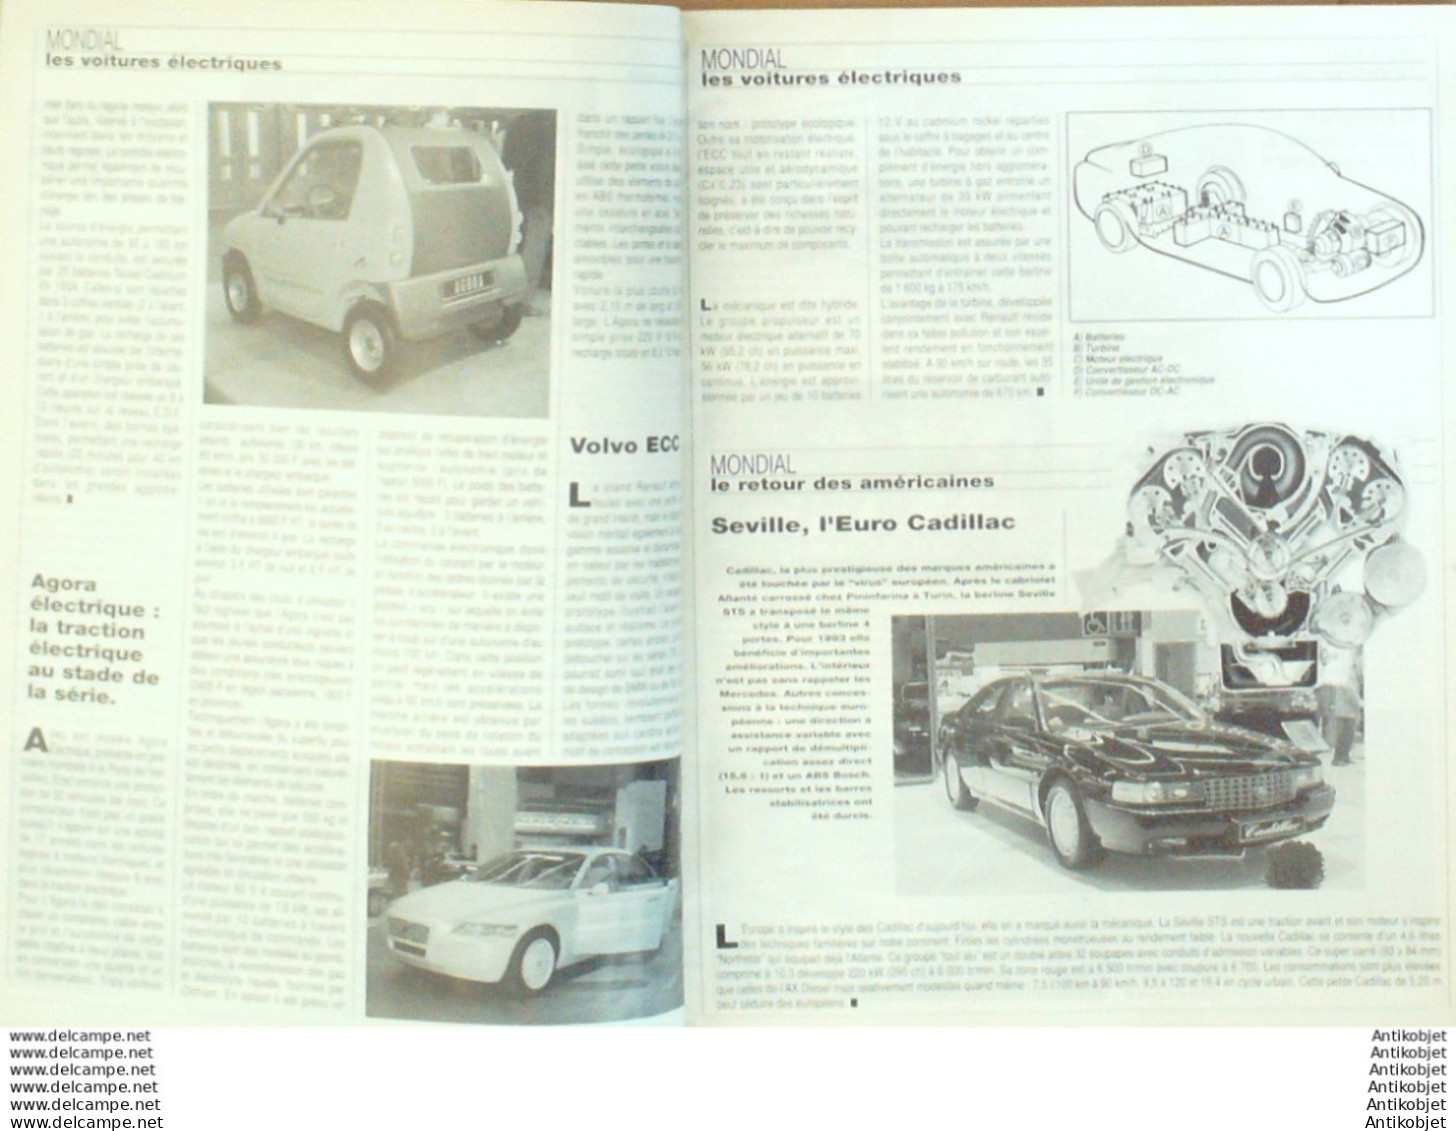 Revue Technique Automobile Nissan Primera Safrane Austin Peugeot 405   N°545 - Auto/Motor